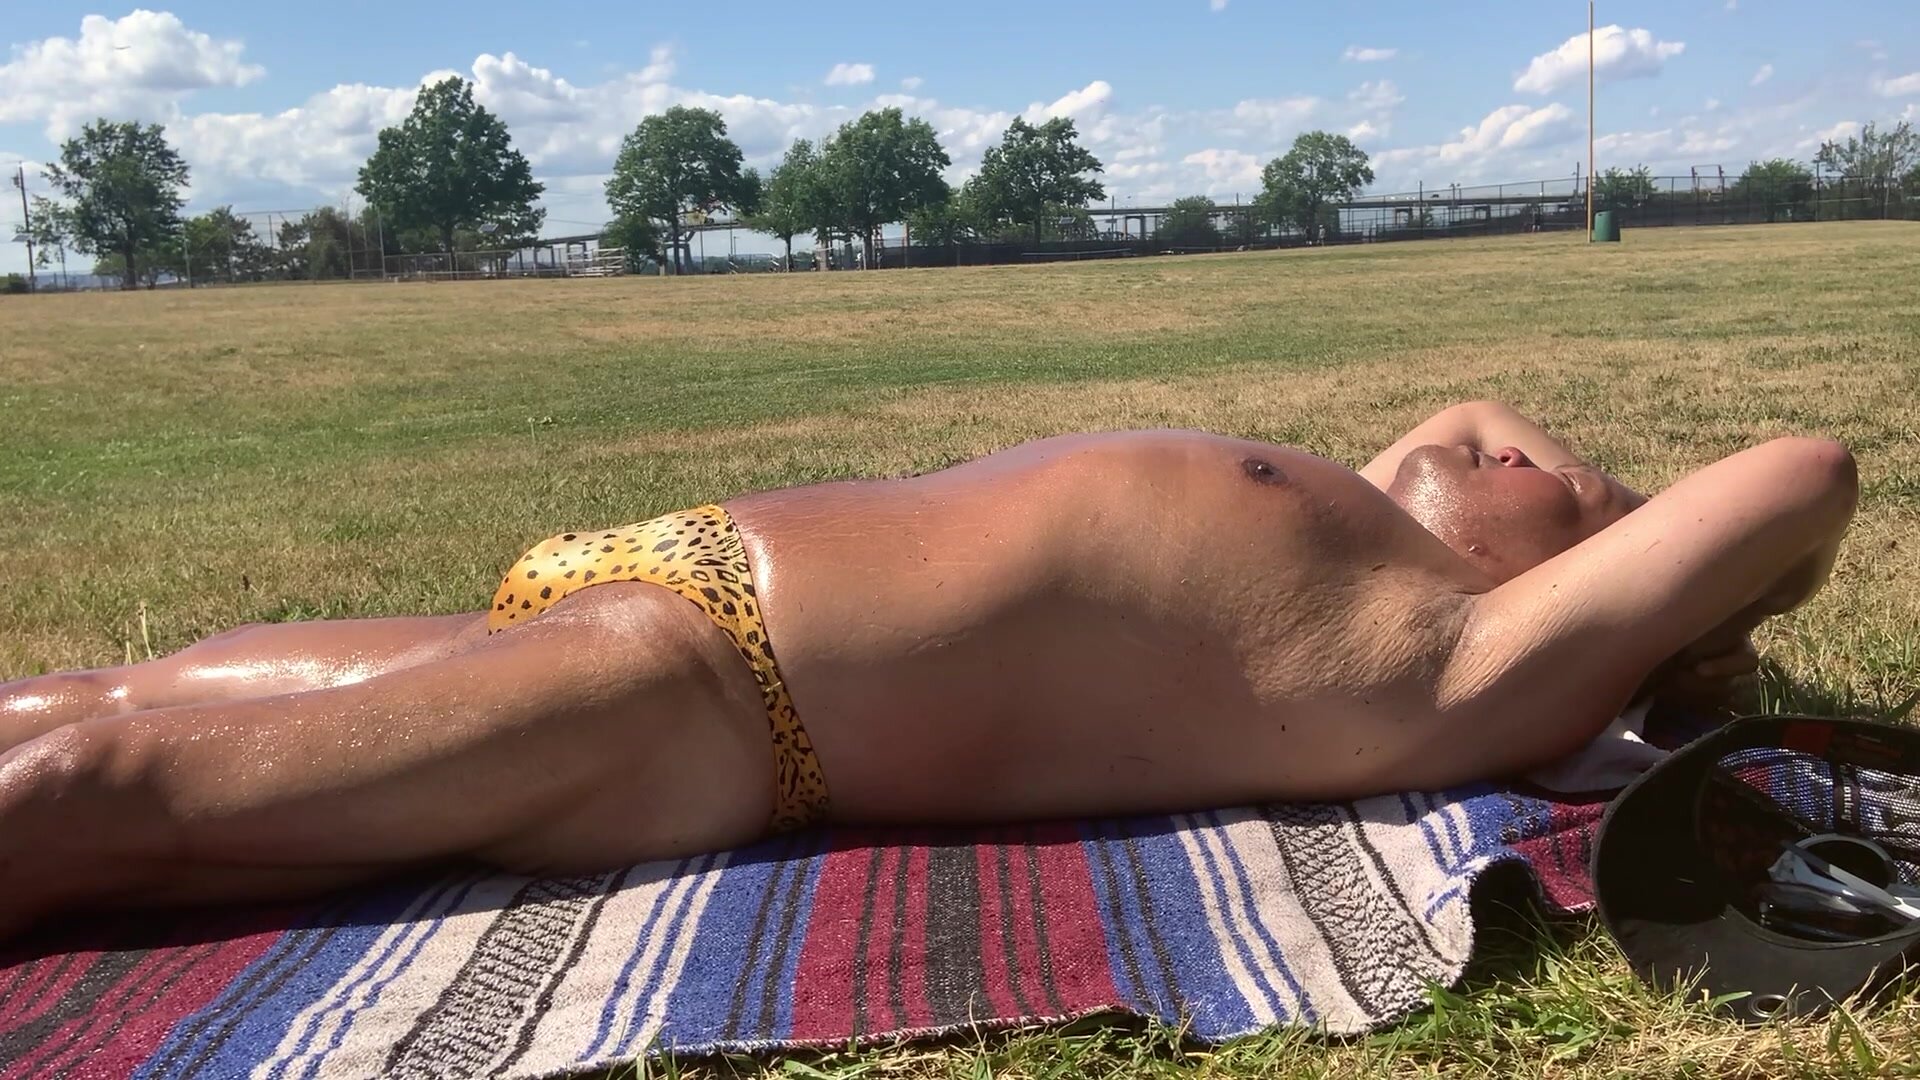 Sunbathing in yellow animal print bikini